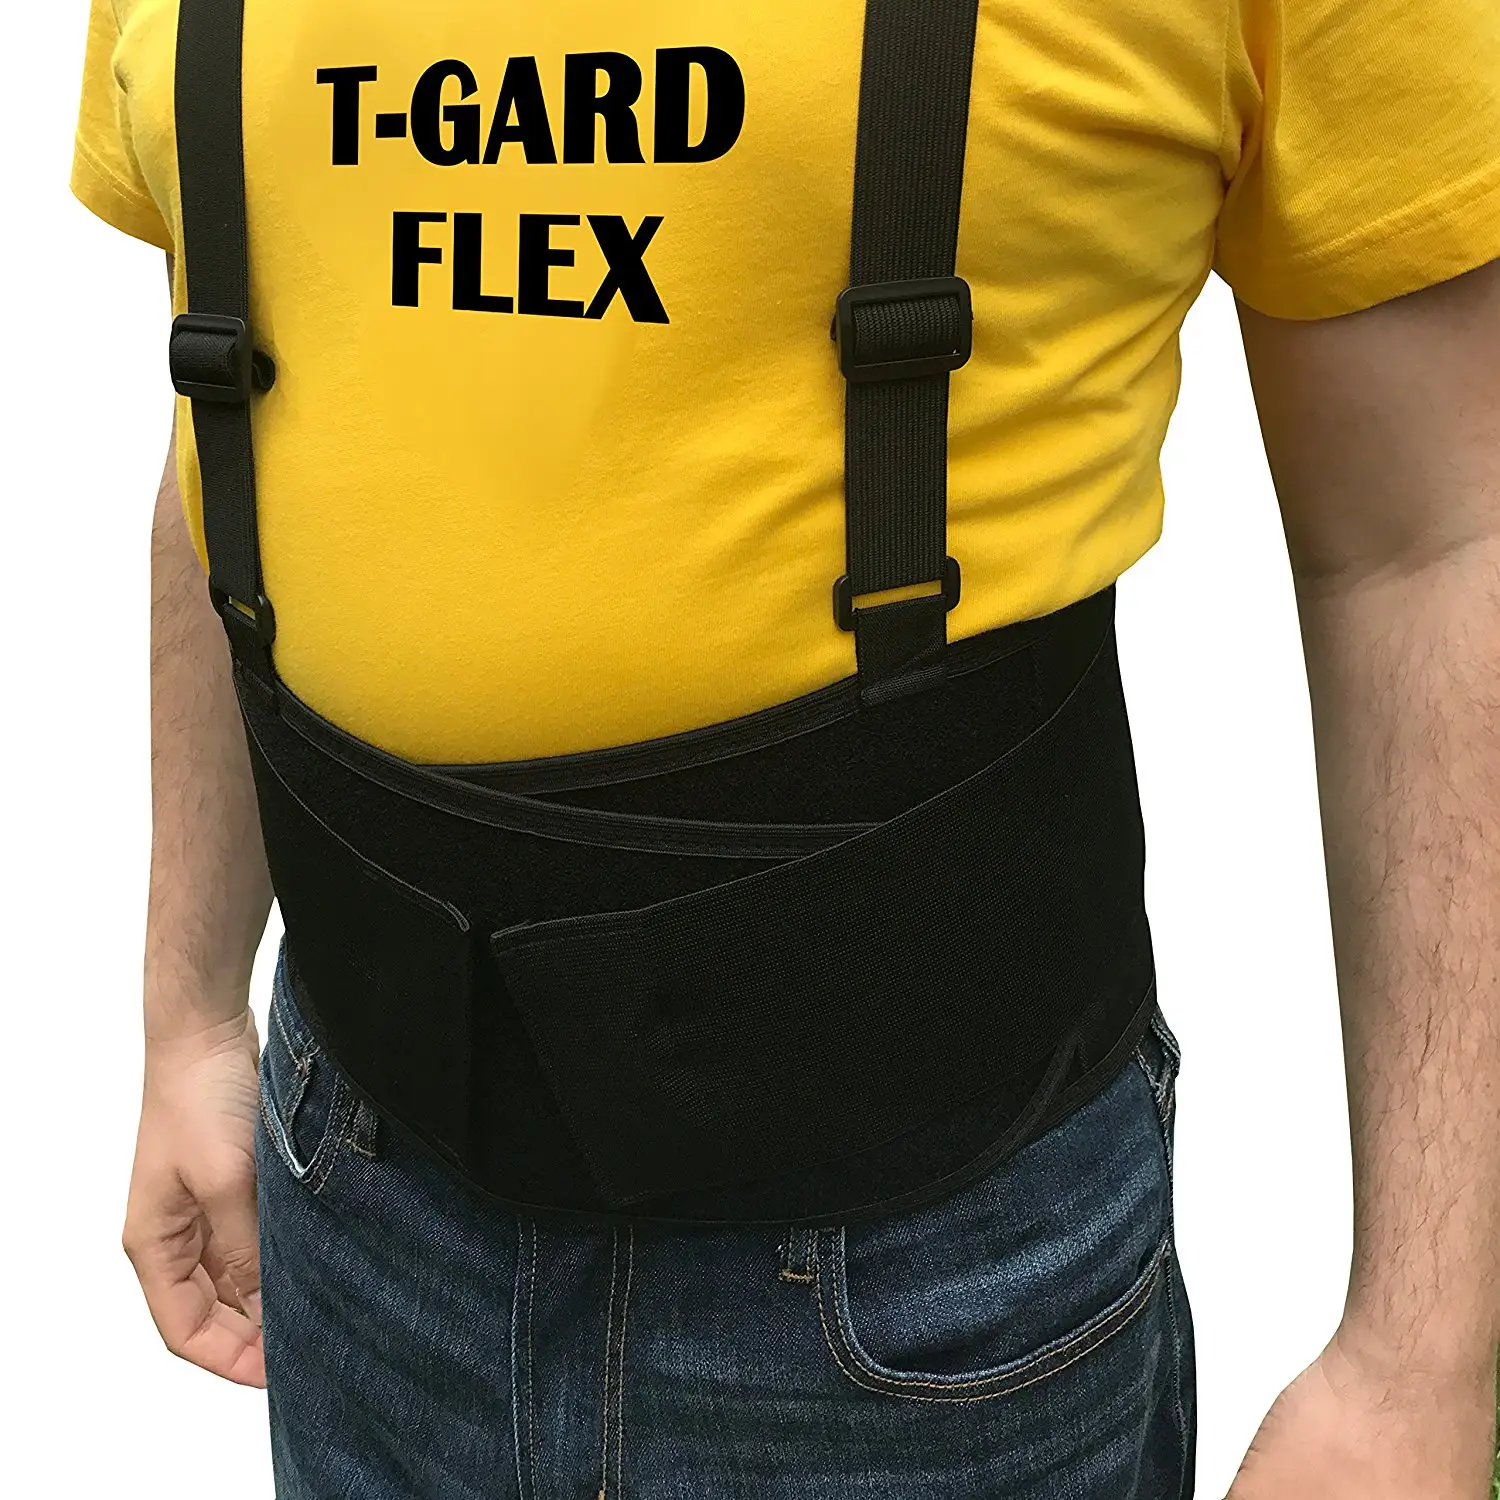 Ceinture de soutien dorsal de sécurité pour travail robuste, sangles amovibles, protège la taille au travail et sur les épaules, Protection professionnelle, 2 pièces